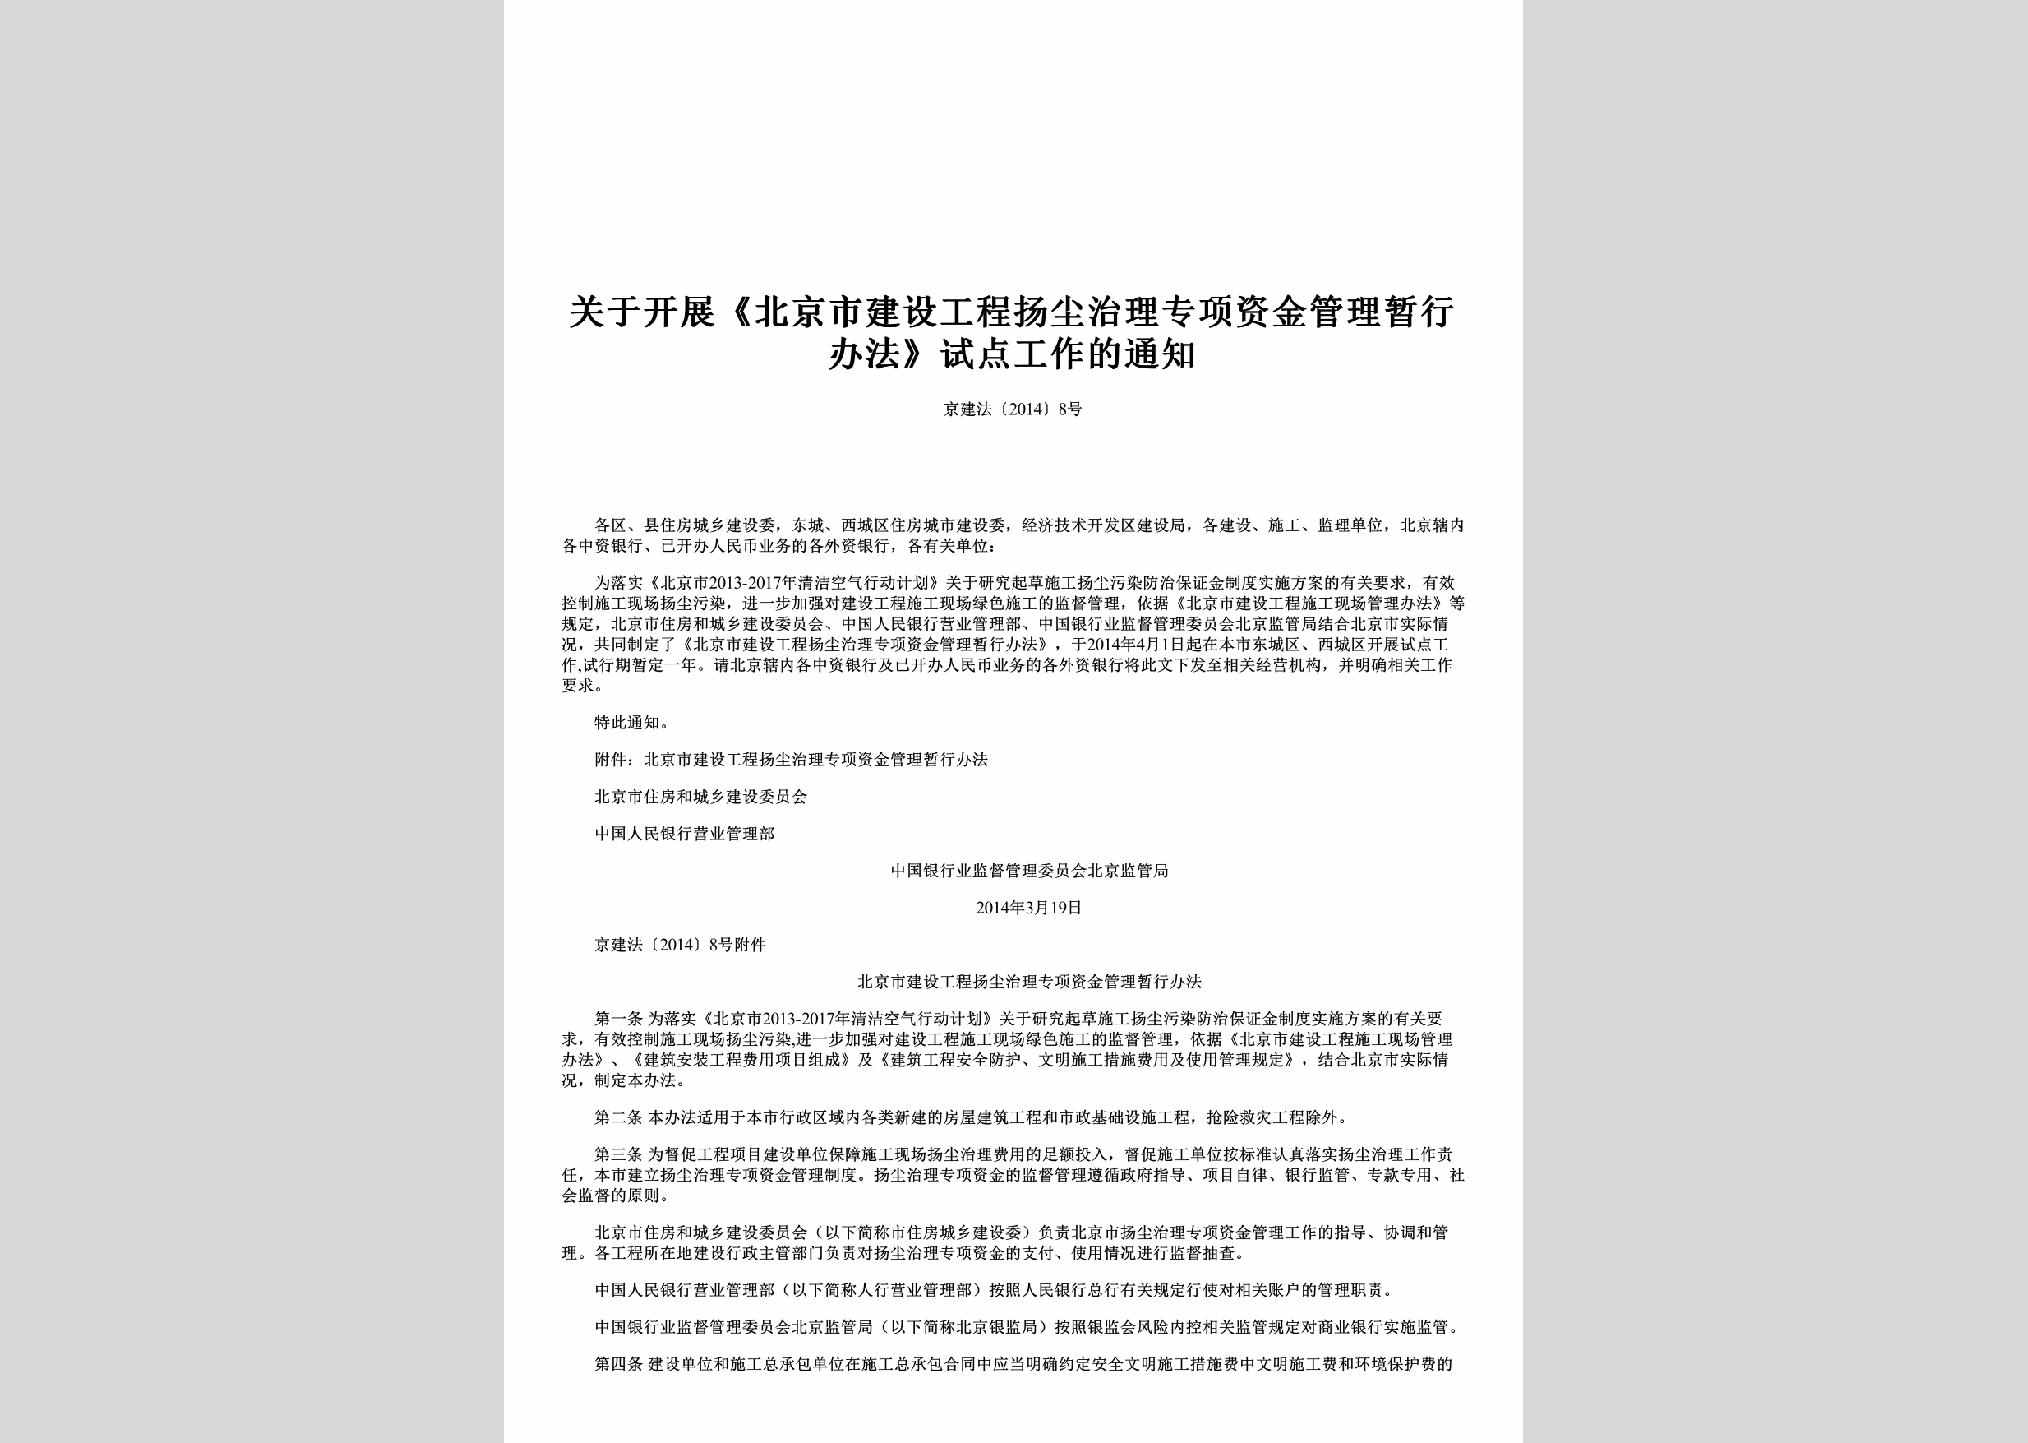 京建法[2014]8号：关于开展《北京市建设工程扬尘治理专项资金管理暂行办法》试点工作的通知